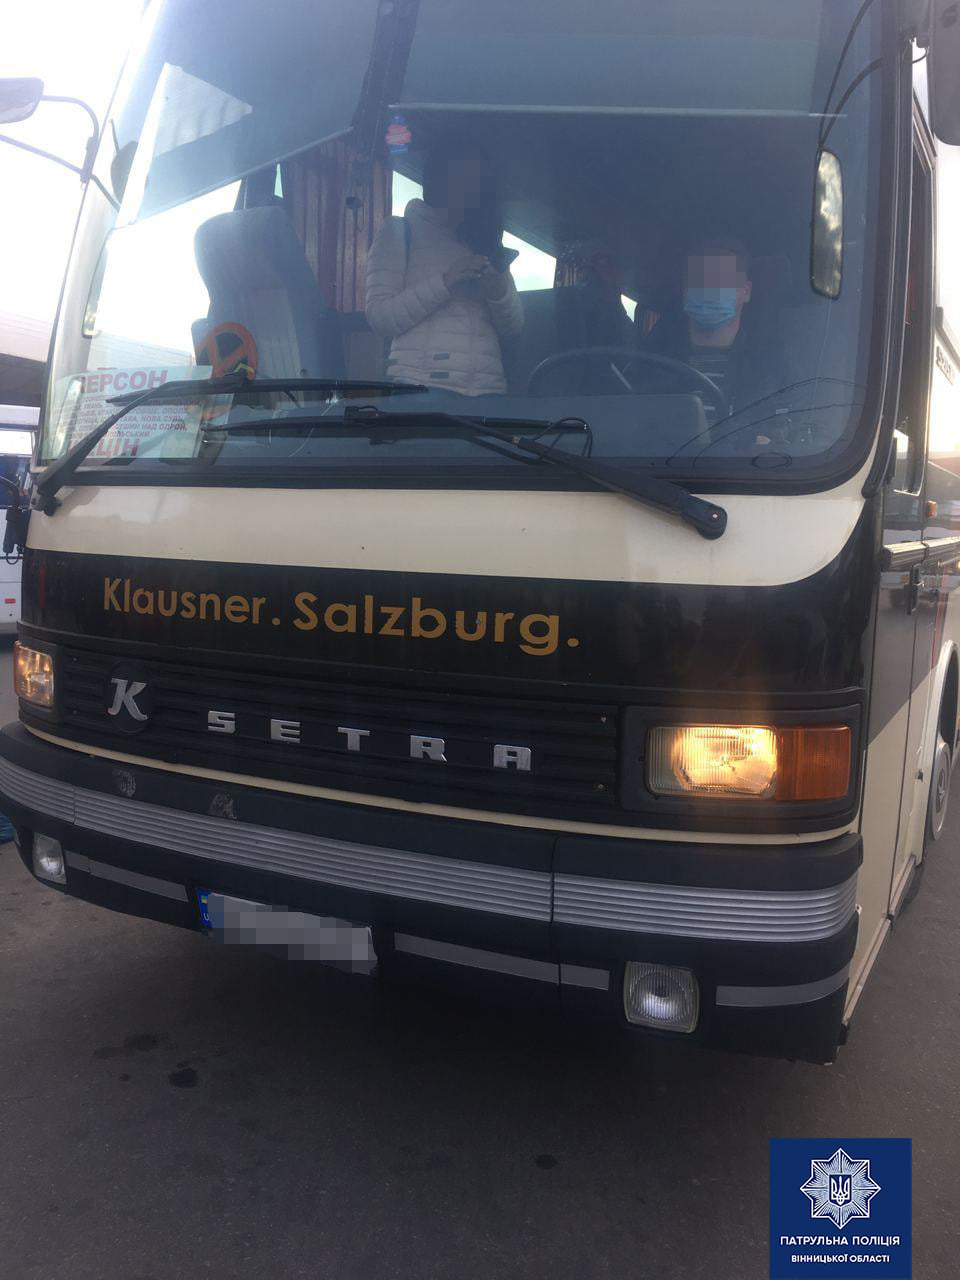 За нарушение карантинных требований оштрафовали водителя автобуса “Херсон-Щецин”